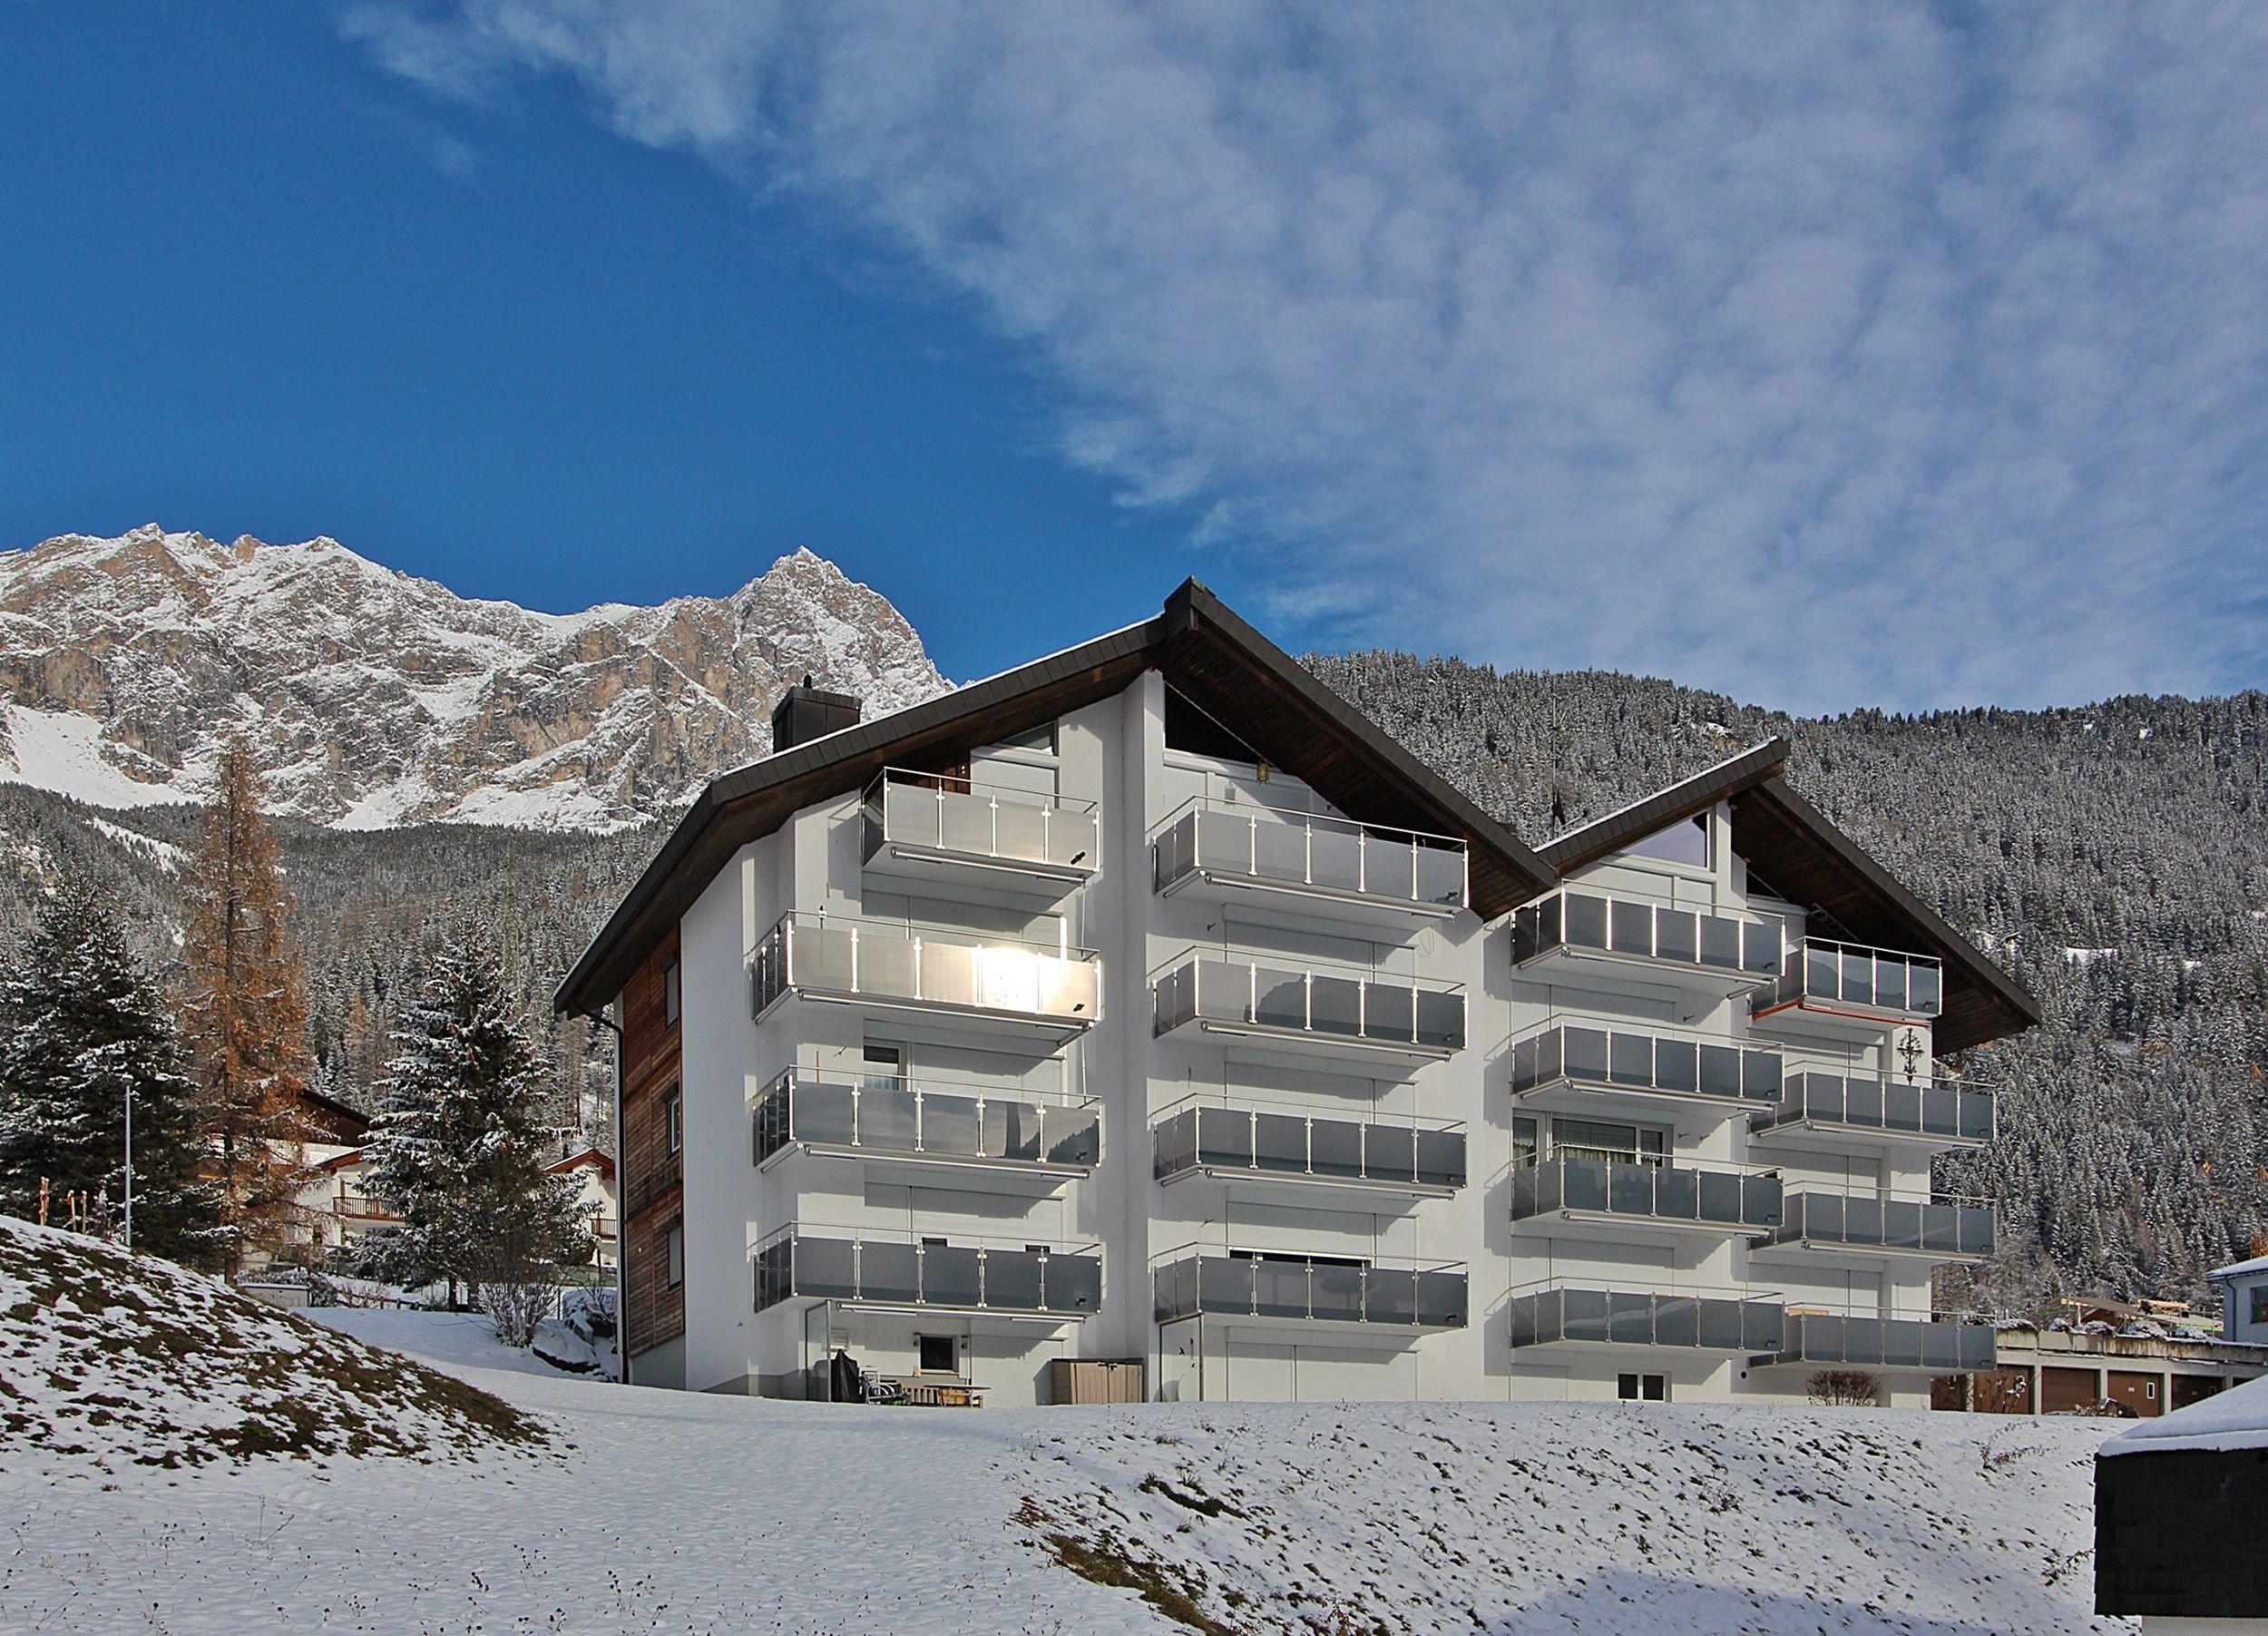 Tgesa La Niva 1 3.5 Zimmerwohnung - 4 Betten Ferienwohnung in der Schweiz